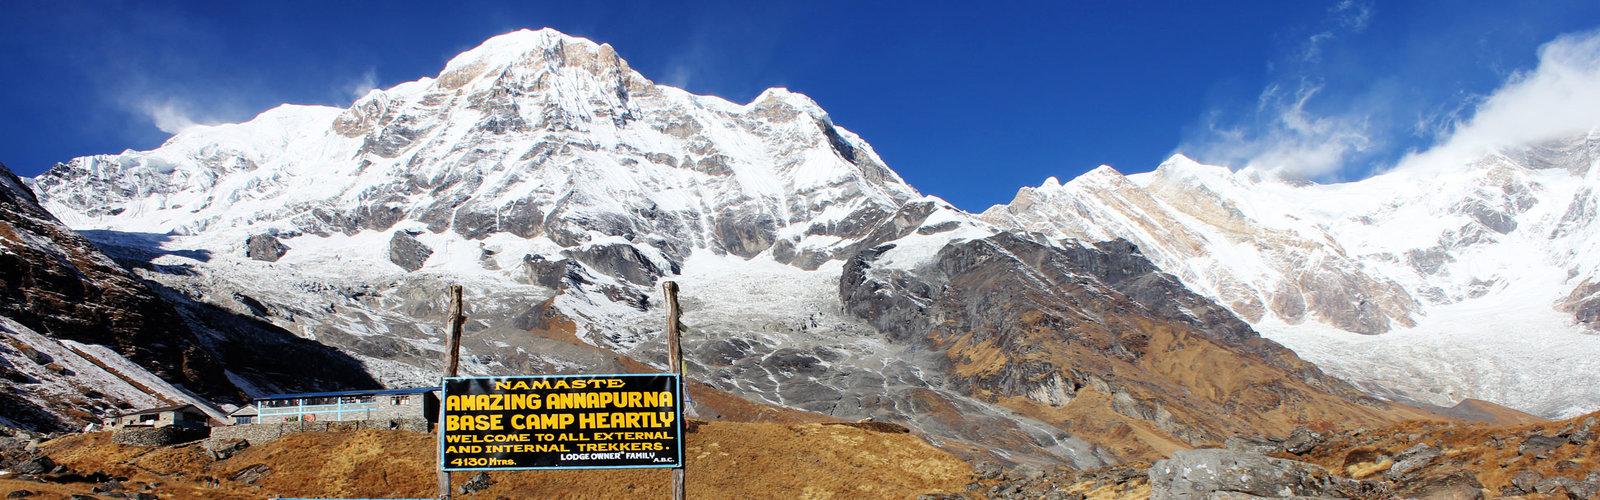 Annapurna base camp trek 